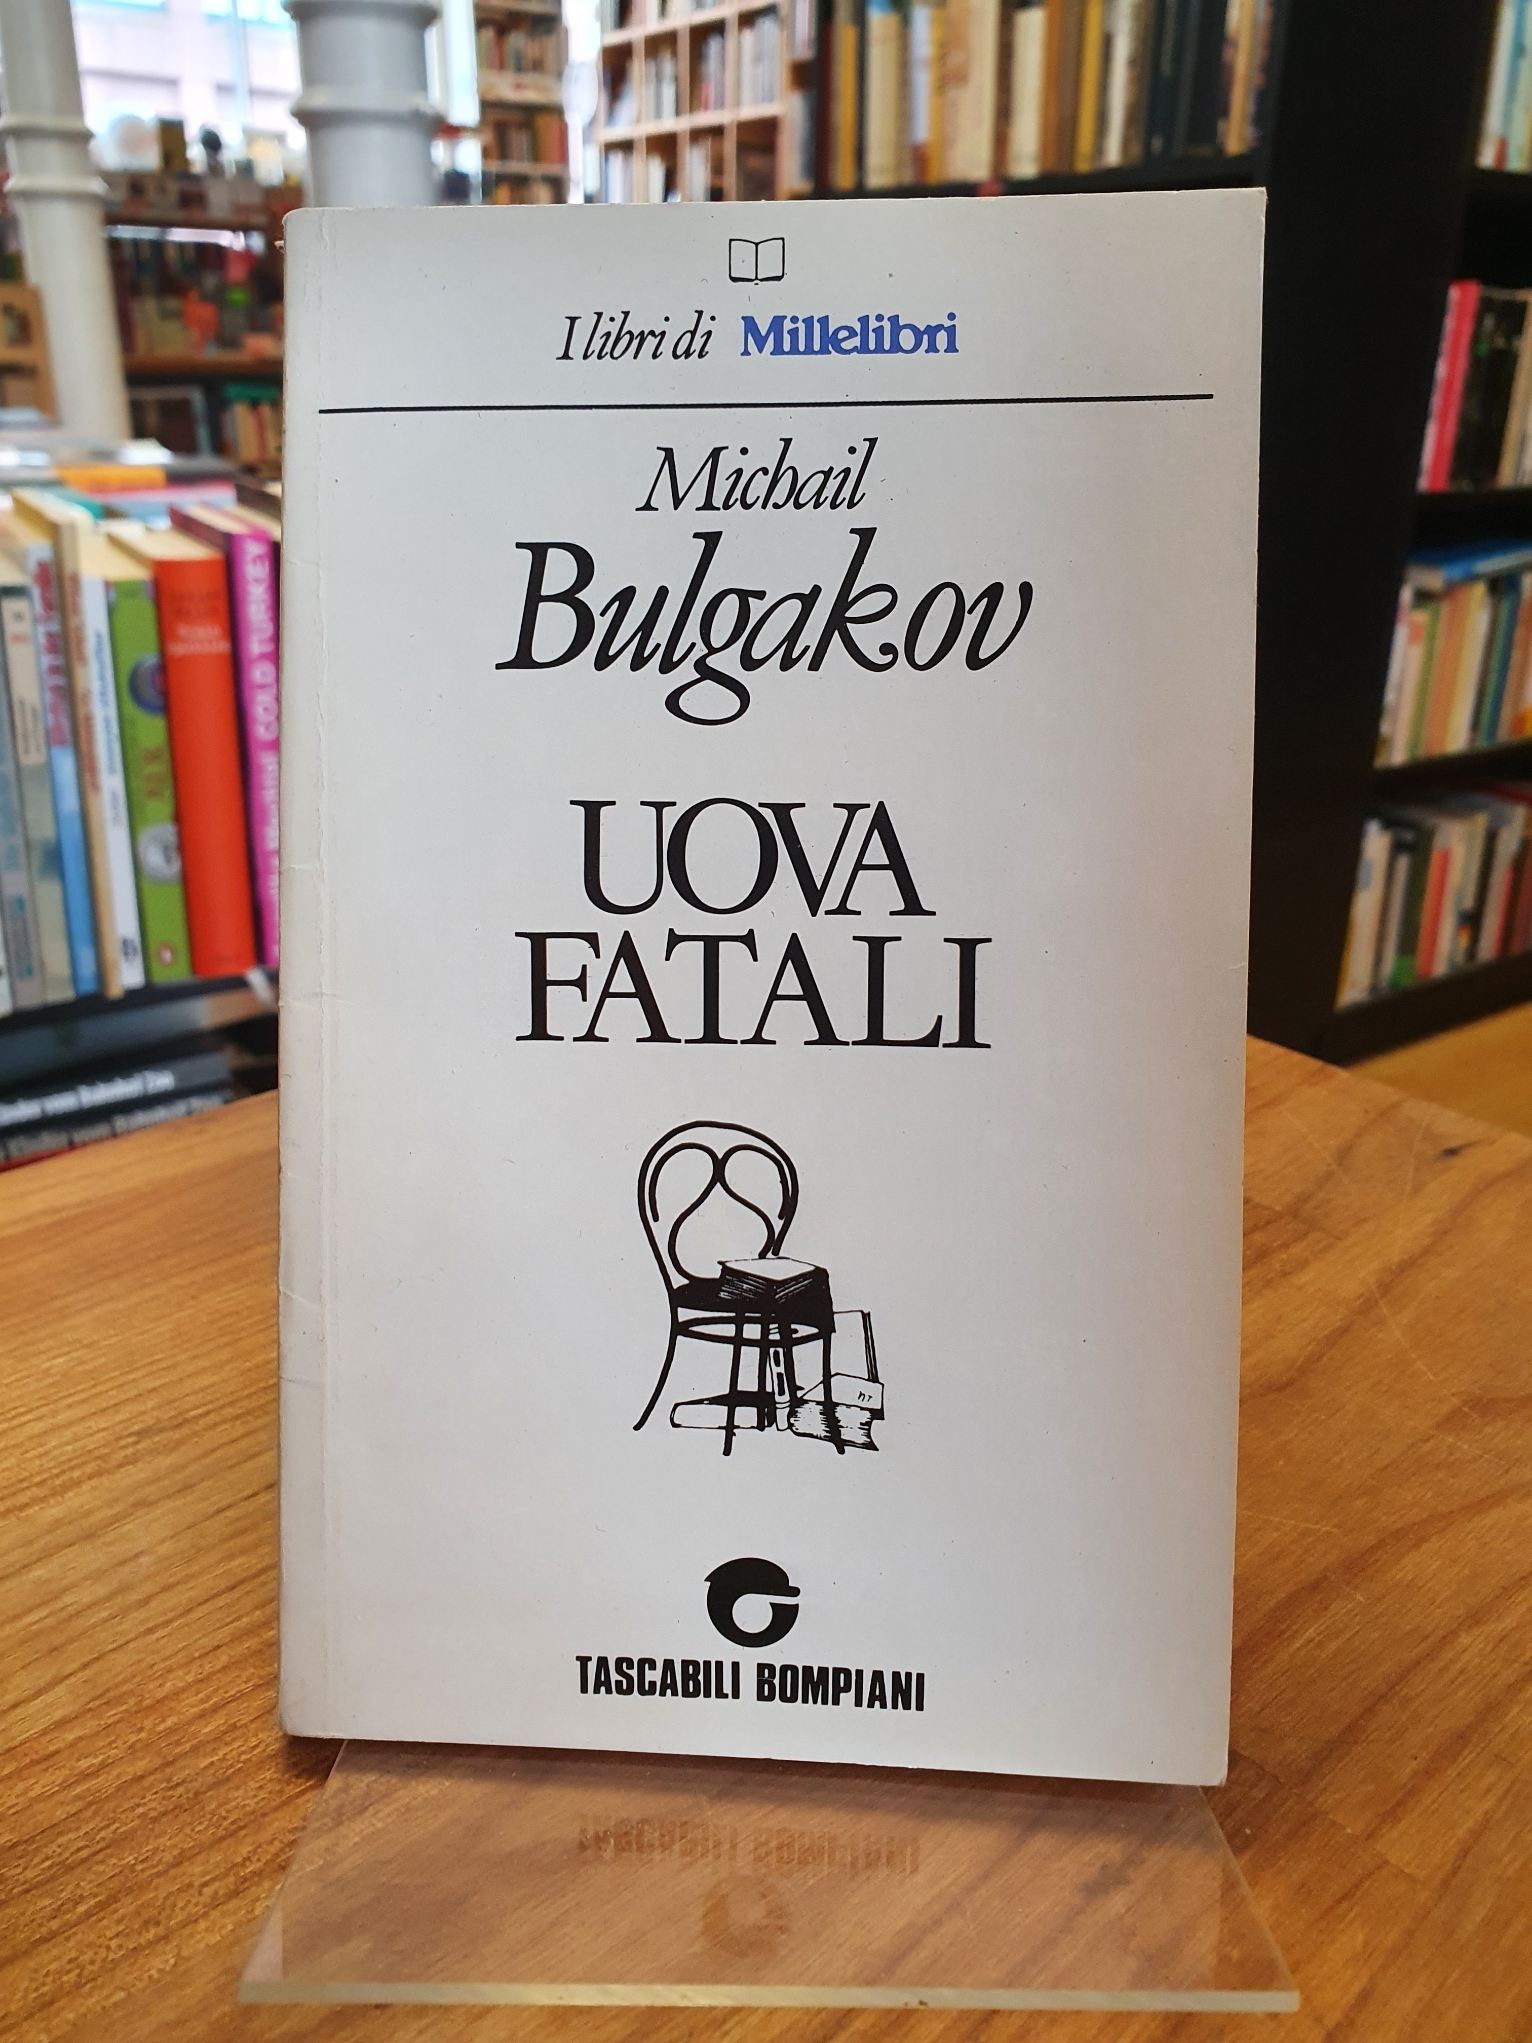 Bulgakow, Uova Fatali,